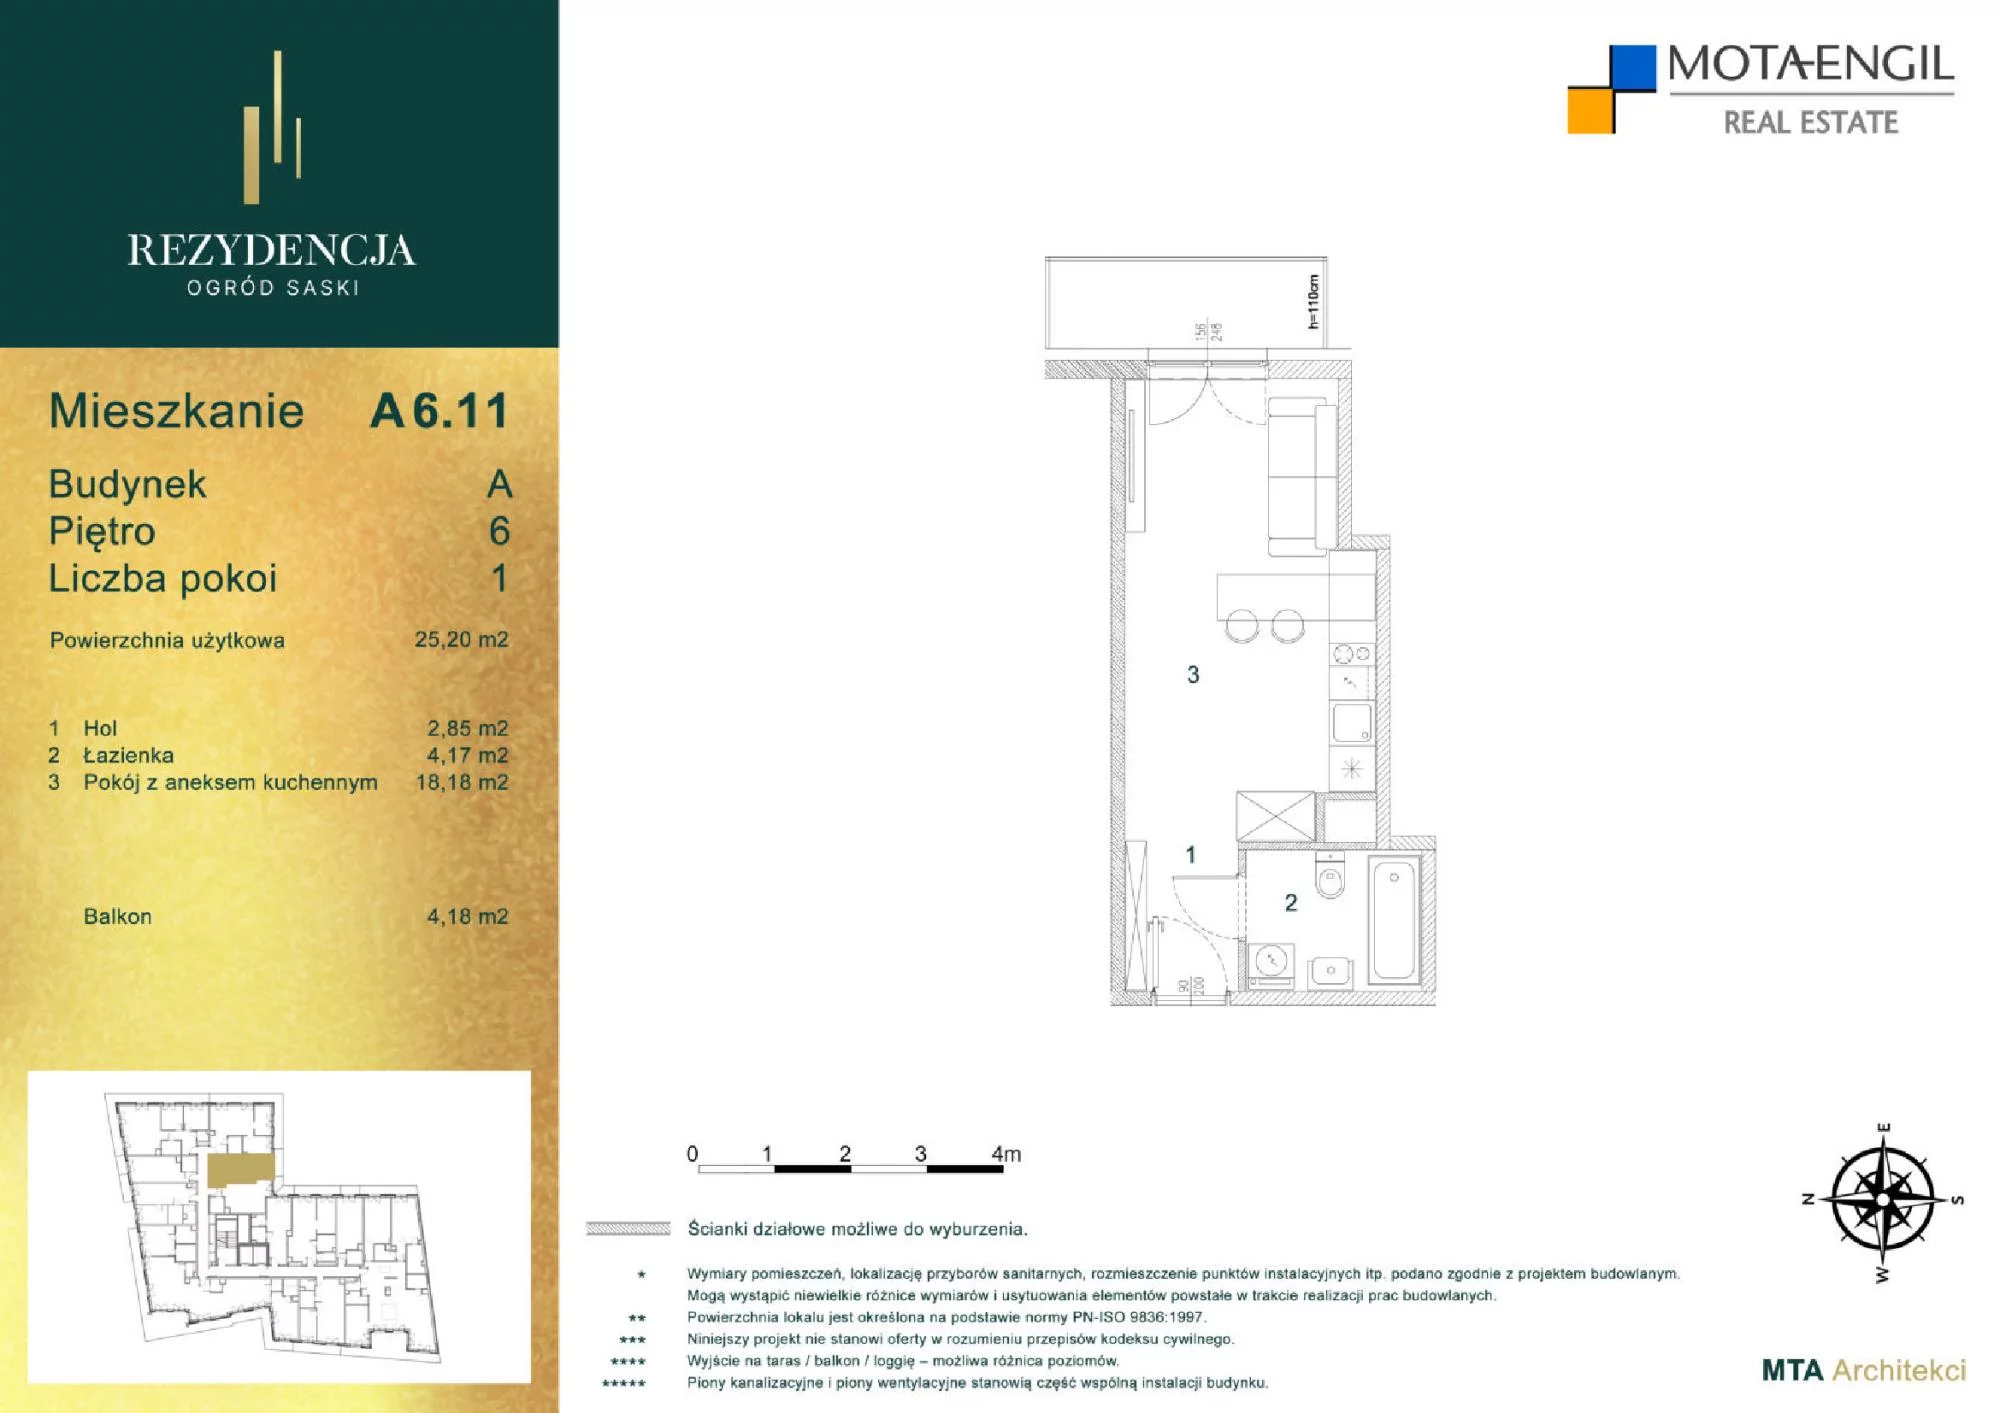 Mieszkanie 25,20 m², piętro 6, oferta nr A6.11, Rezydencja Ogród Saski, Lublin, Wieniawa, ul. Jasna 7, 7A